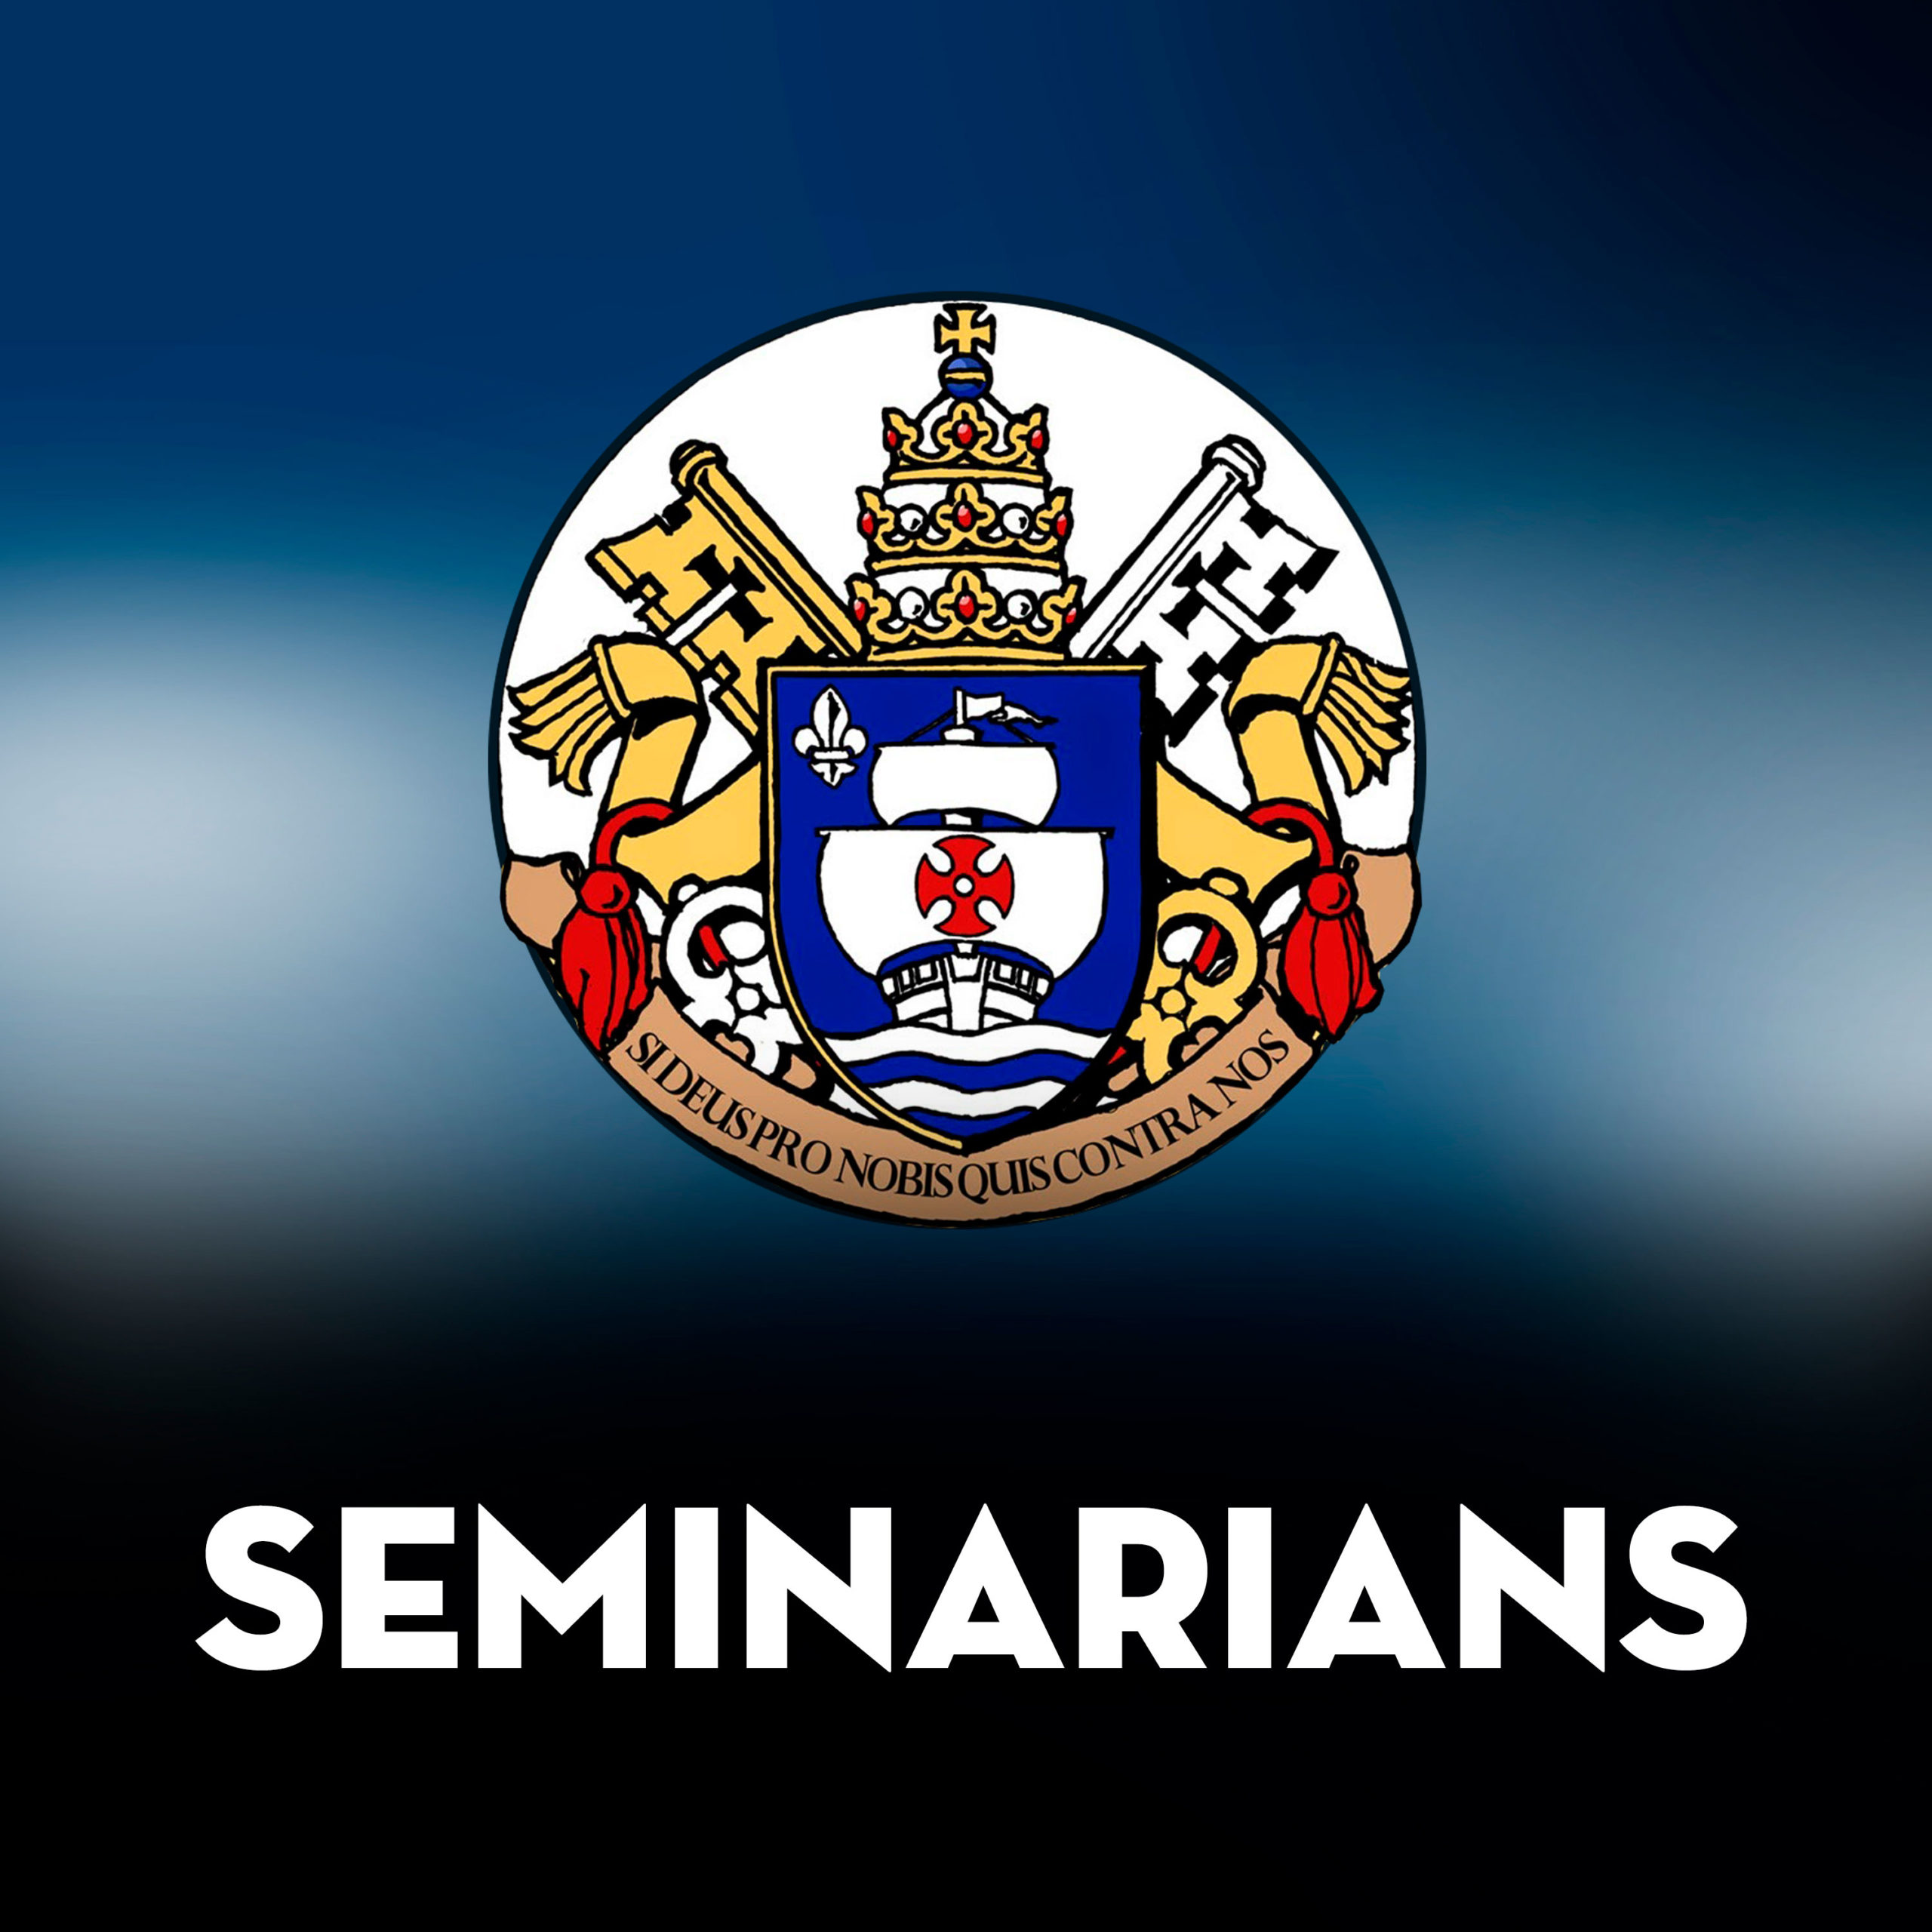 11/07/20-The Seminarians